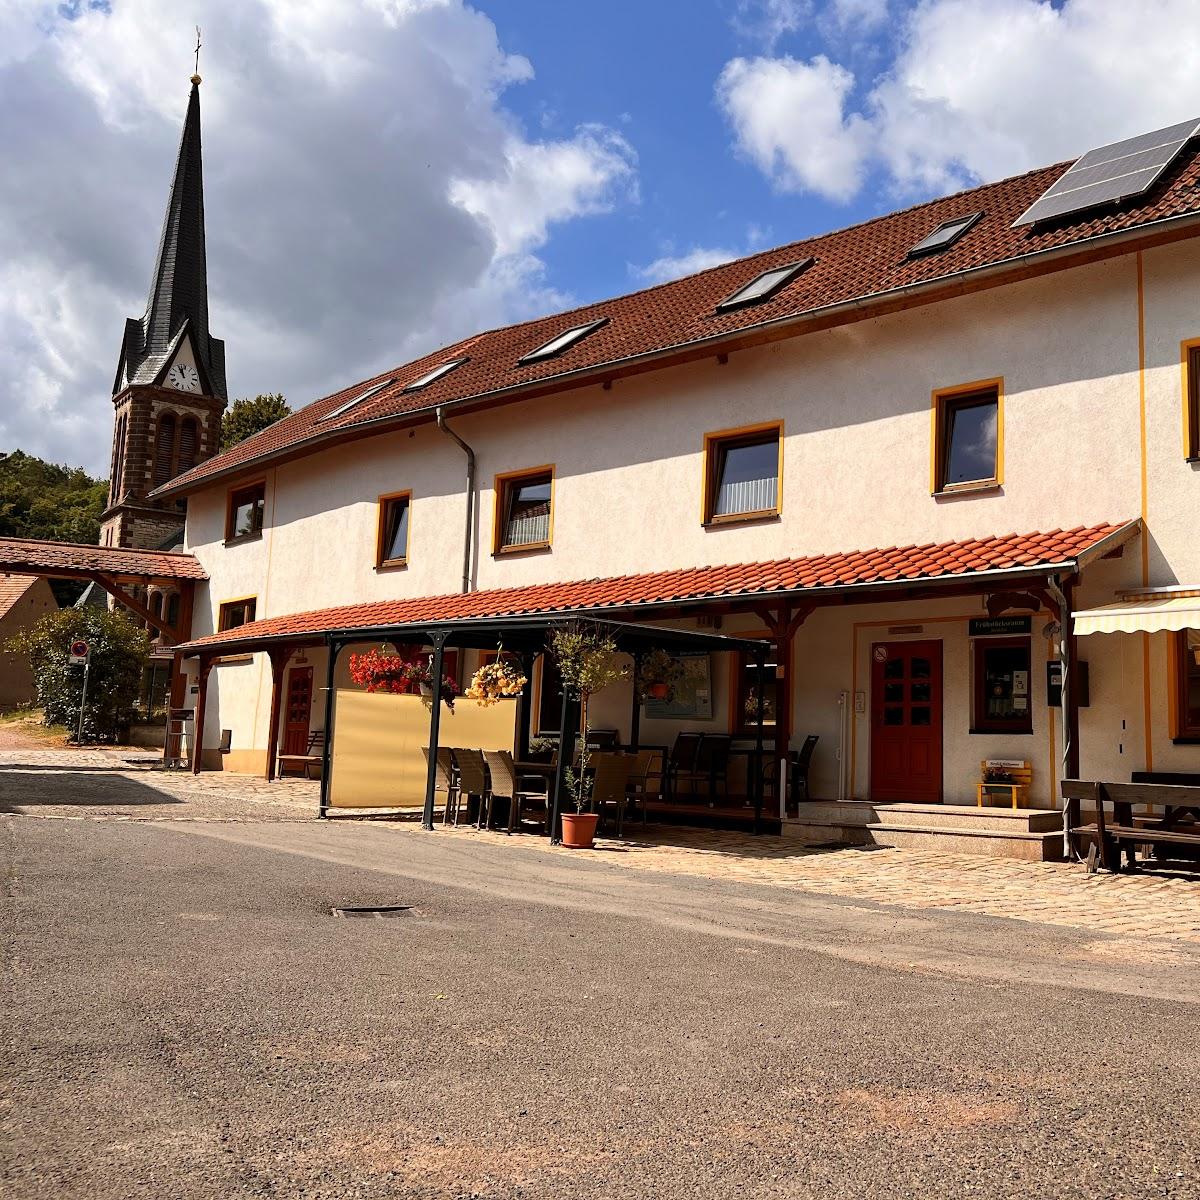 Restaurant "Gasthaus und Pension Tor zum Rennsteig" in Eisenach